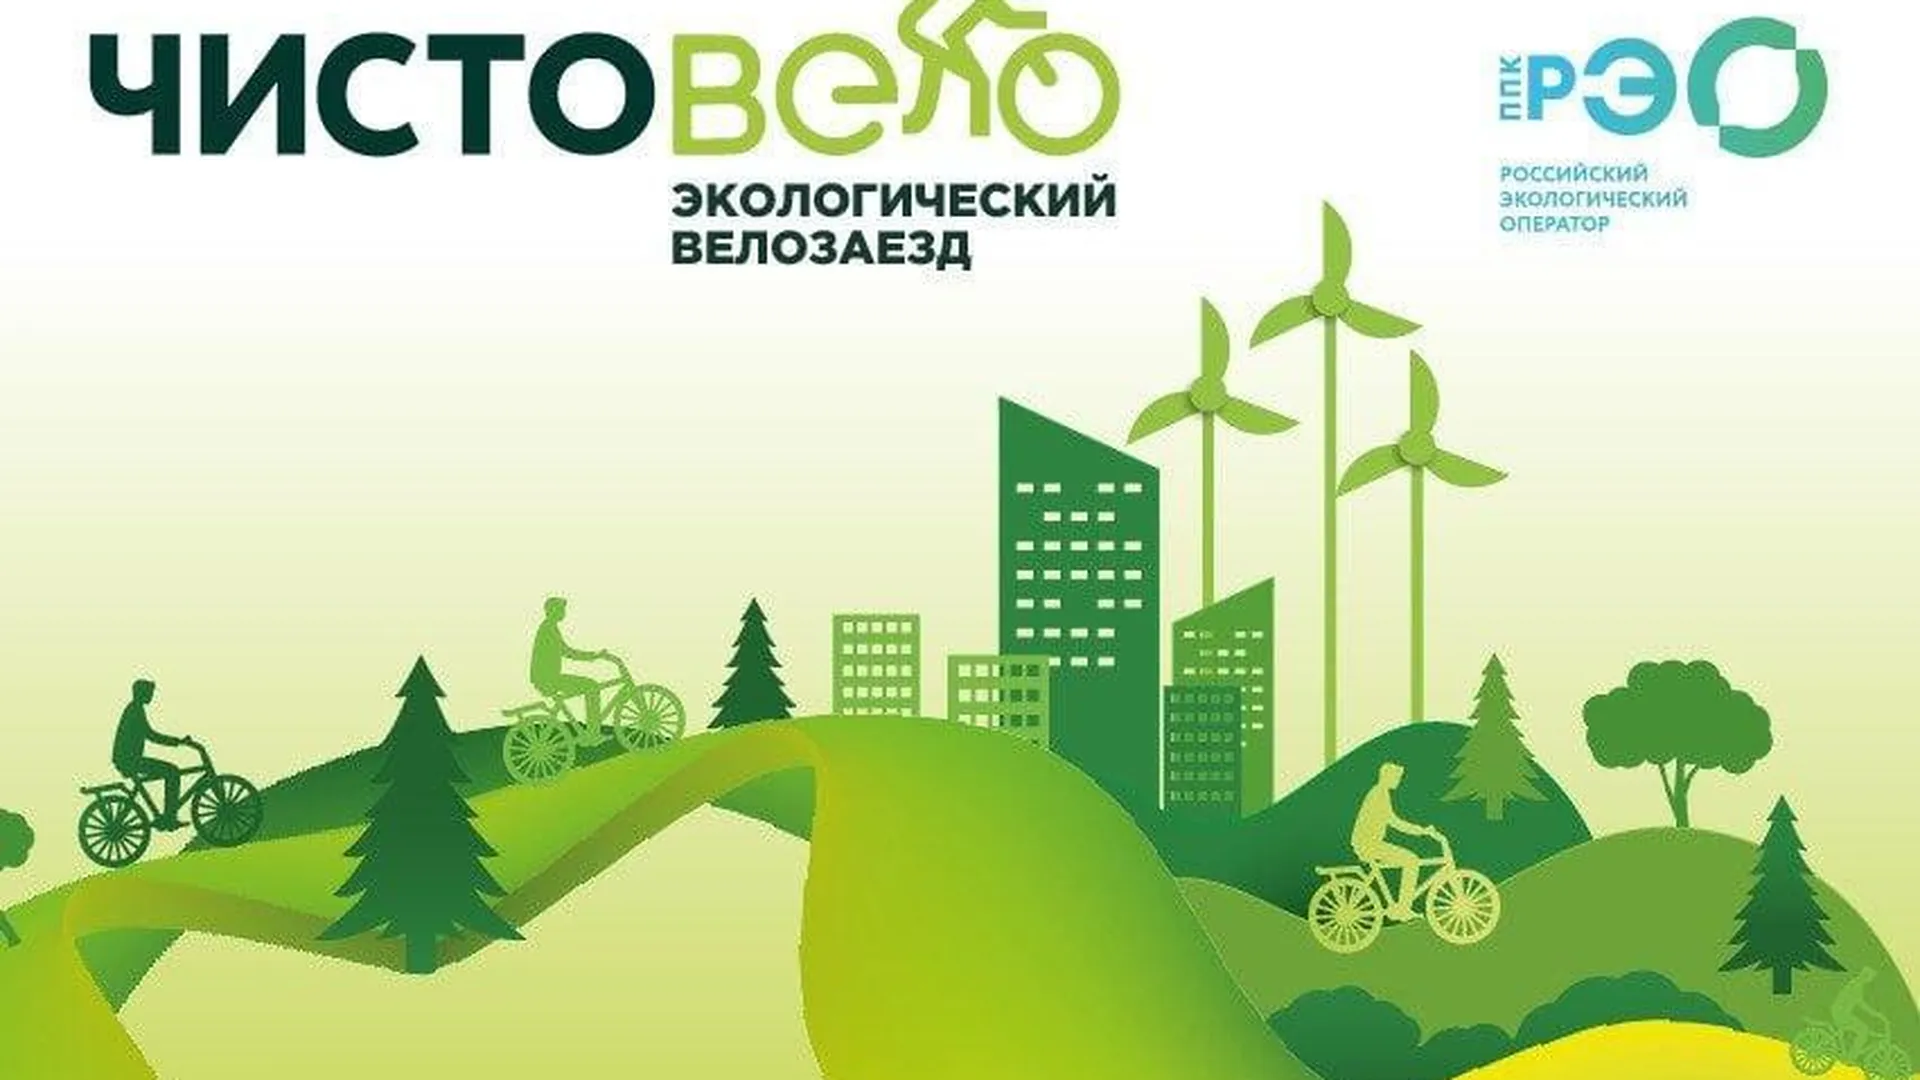 Экологический велозаезд пройдет 22 октября в Можайском округе в рамках серии Gran Fondo